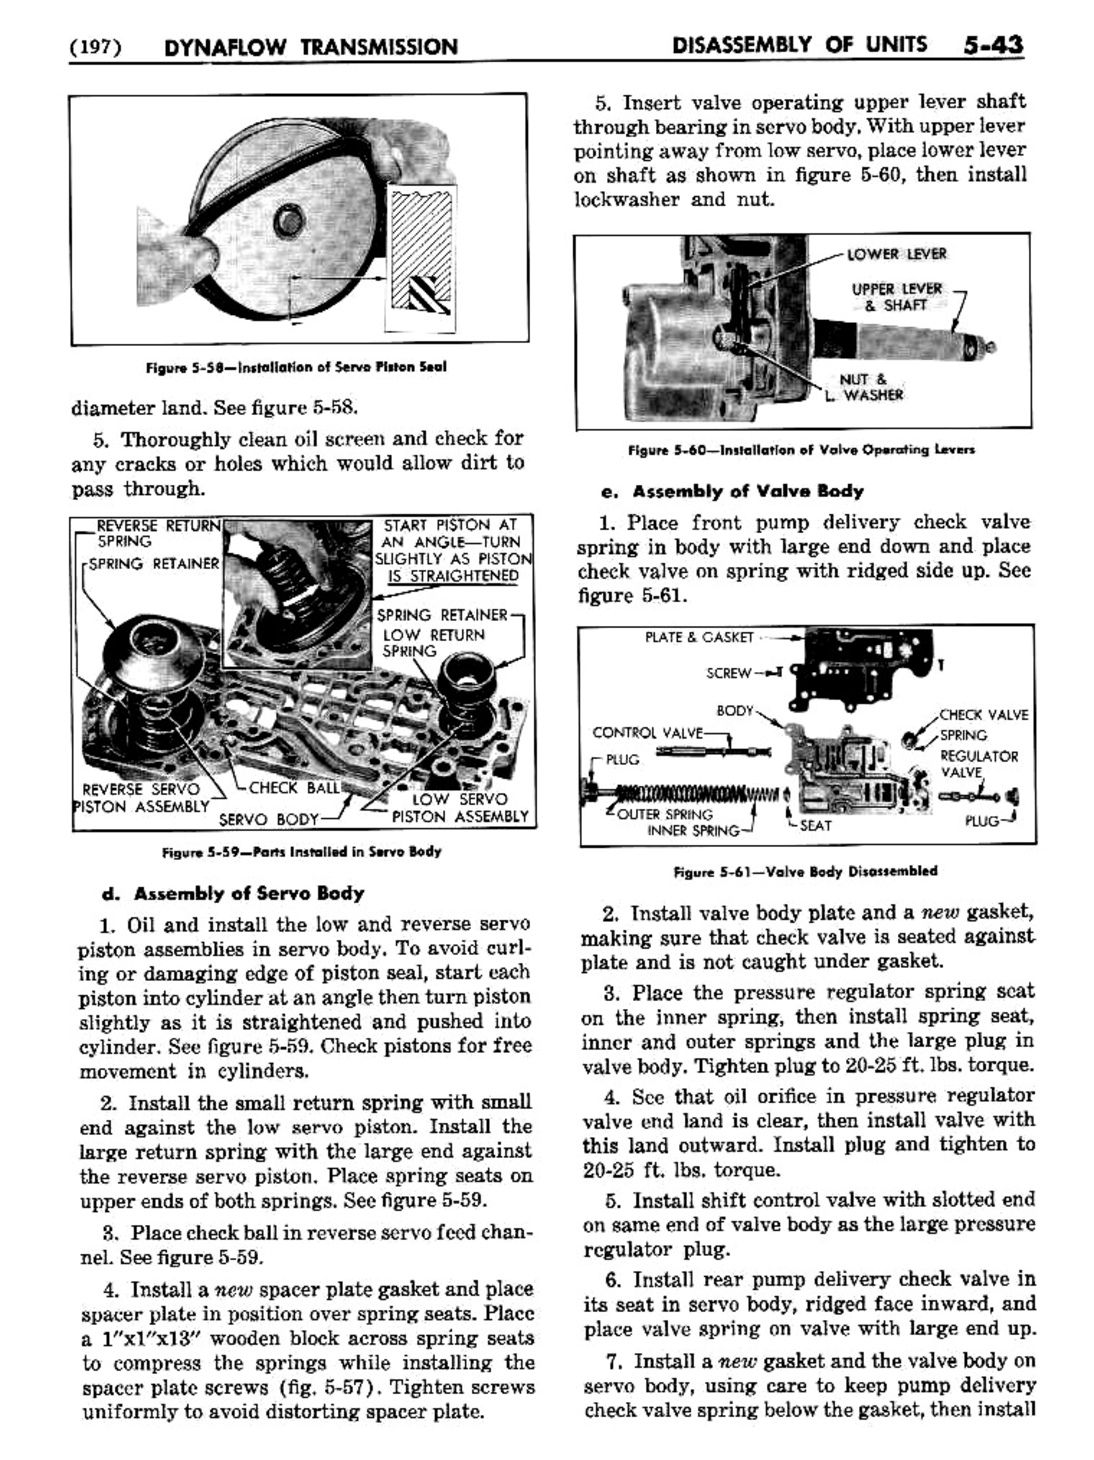 n_06 1954 Buick Shop Manual - Dynaflow-043-043.jpg